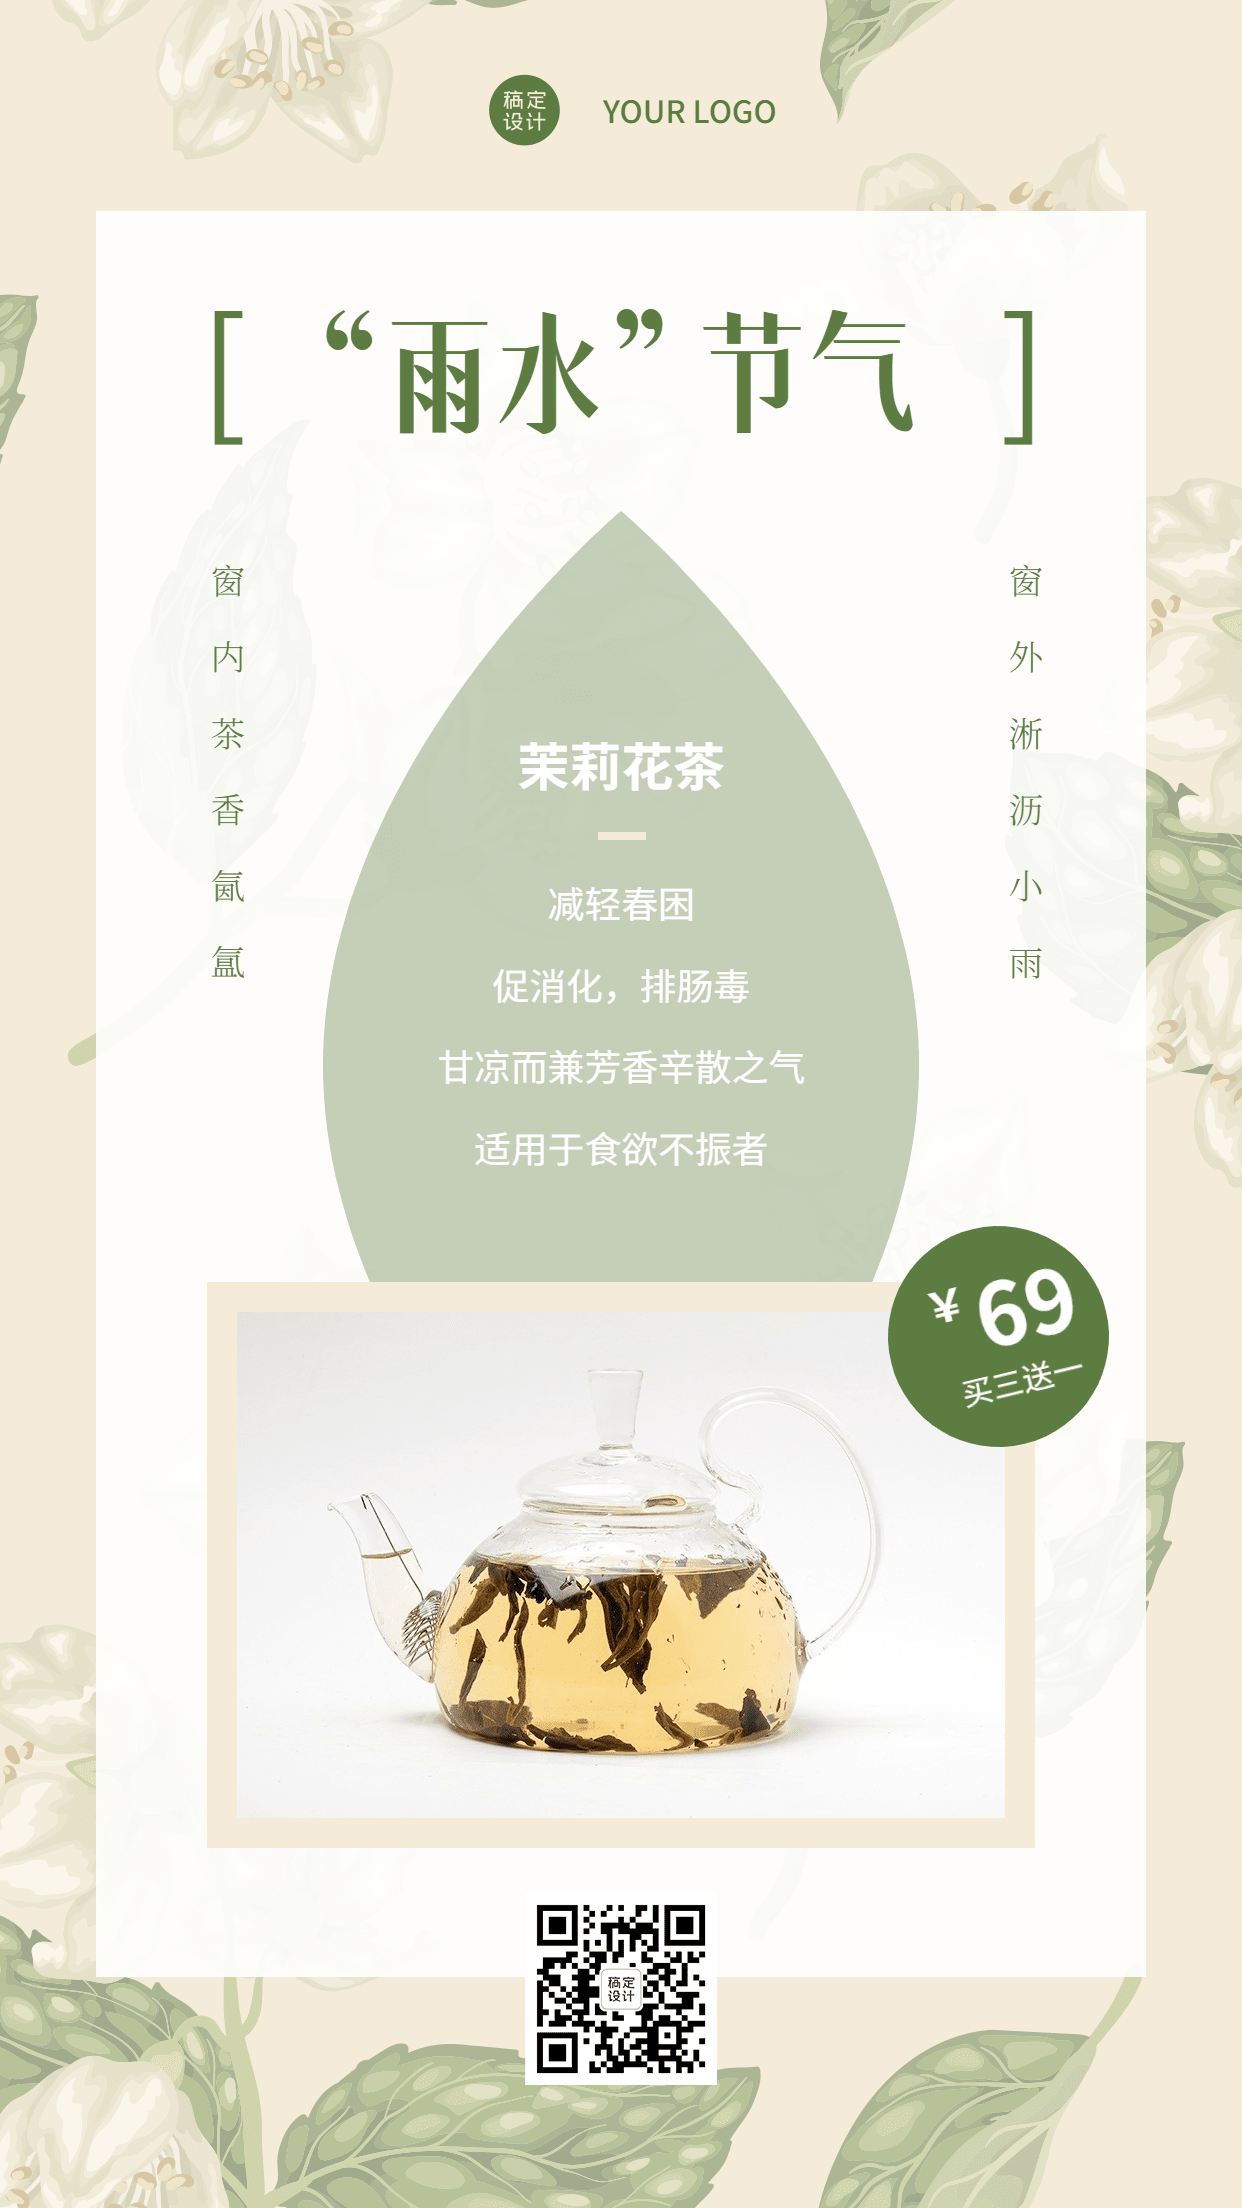 雨水茉莉花茶产品营销展示手机海报预览效果